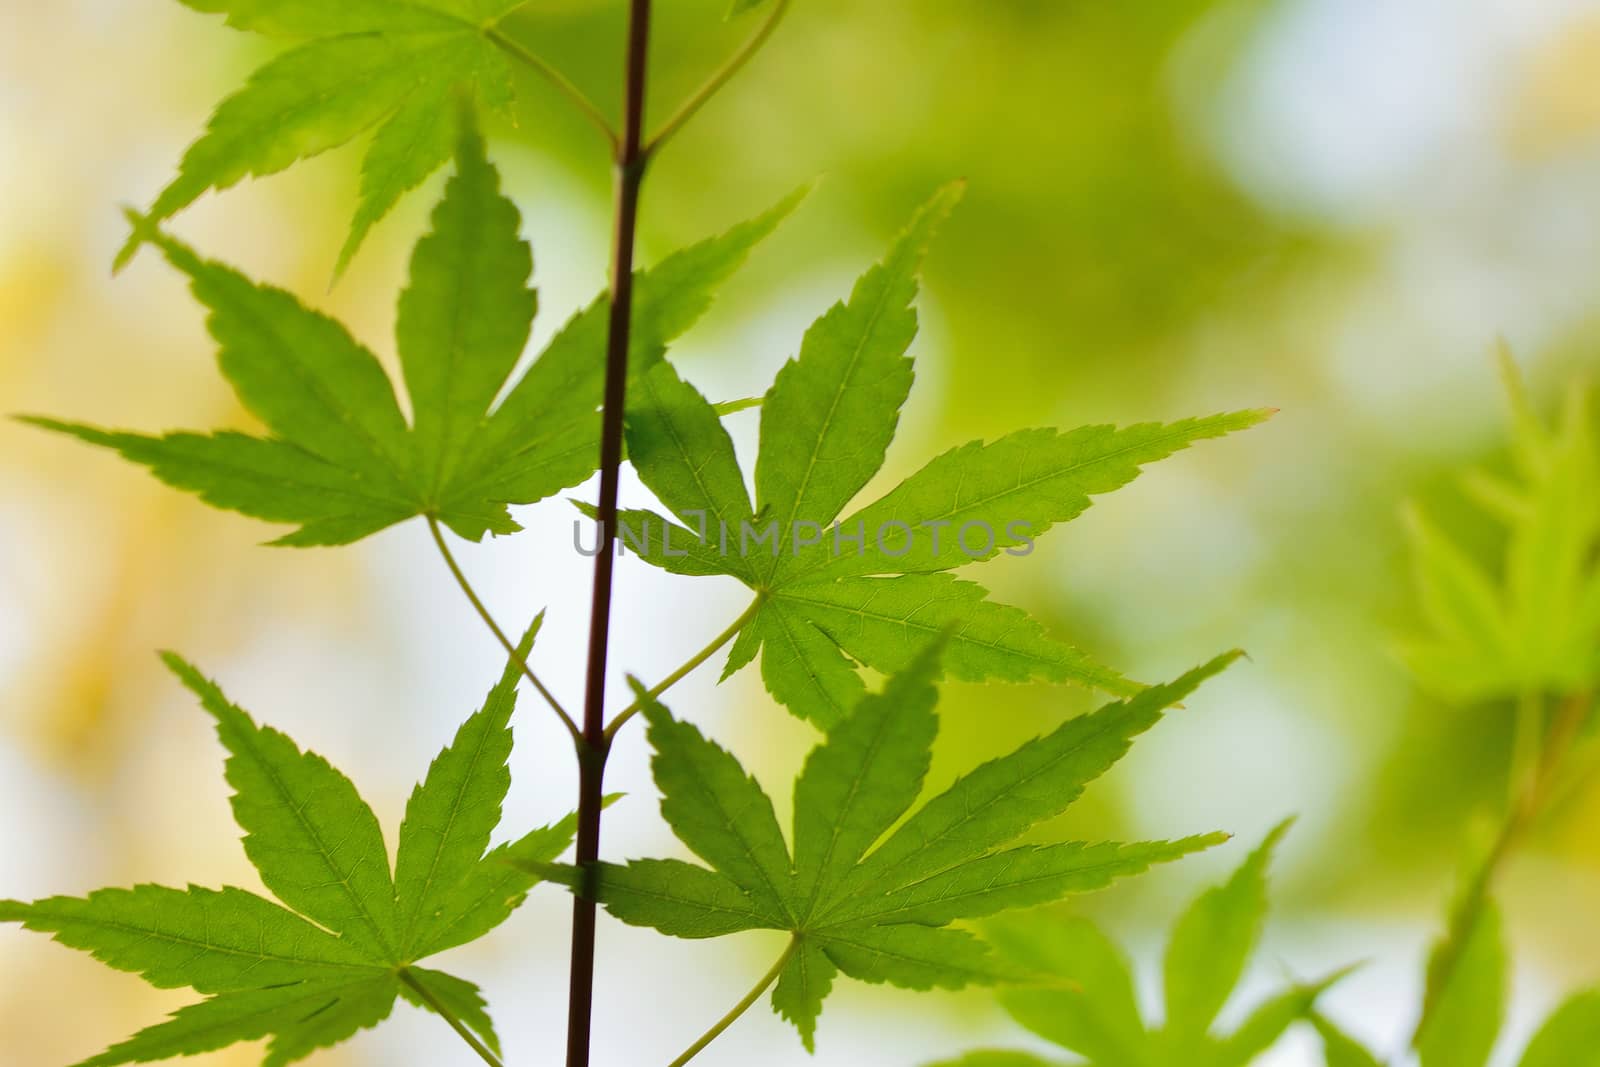 Macro details of fresh green Japanese Maple leaves in horizontal frame